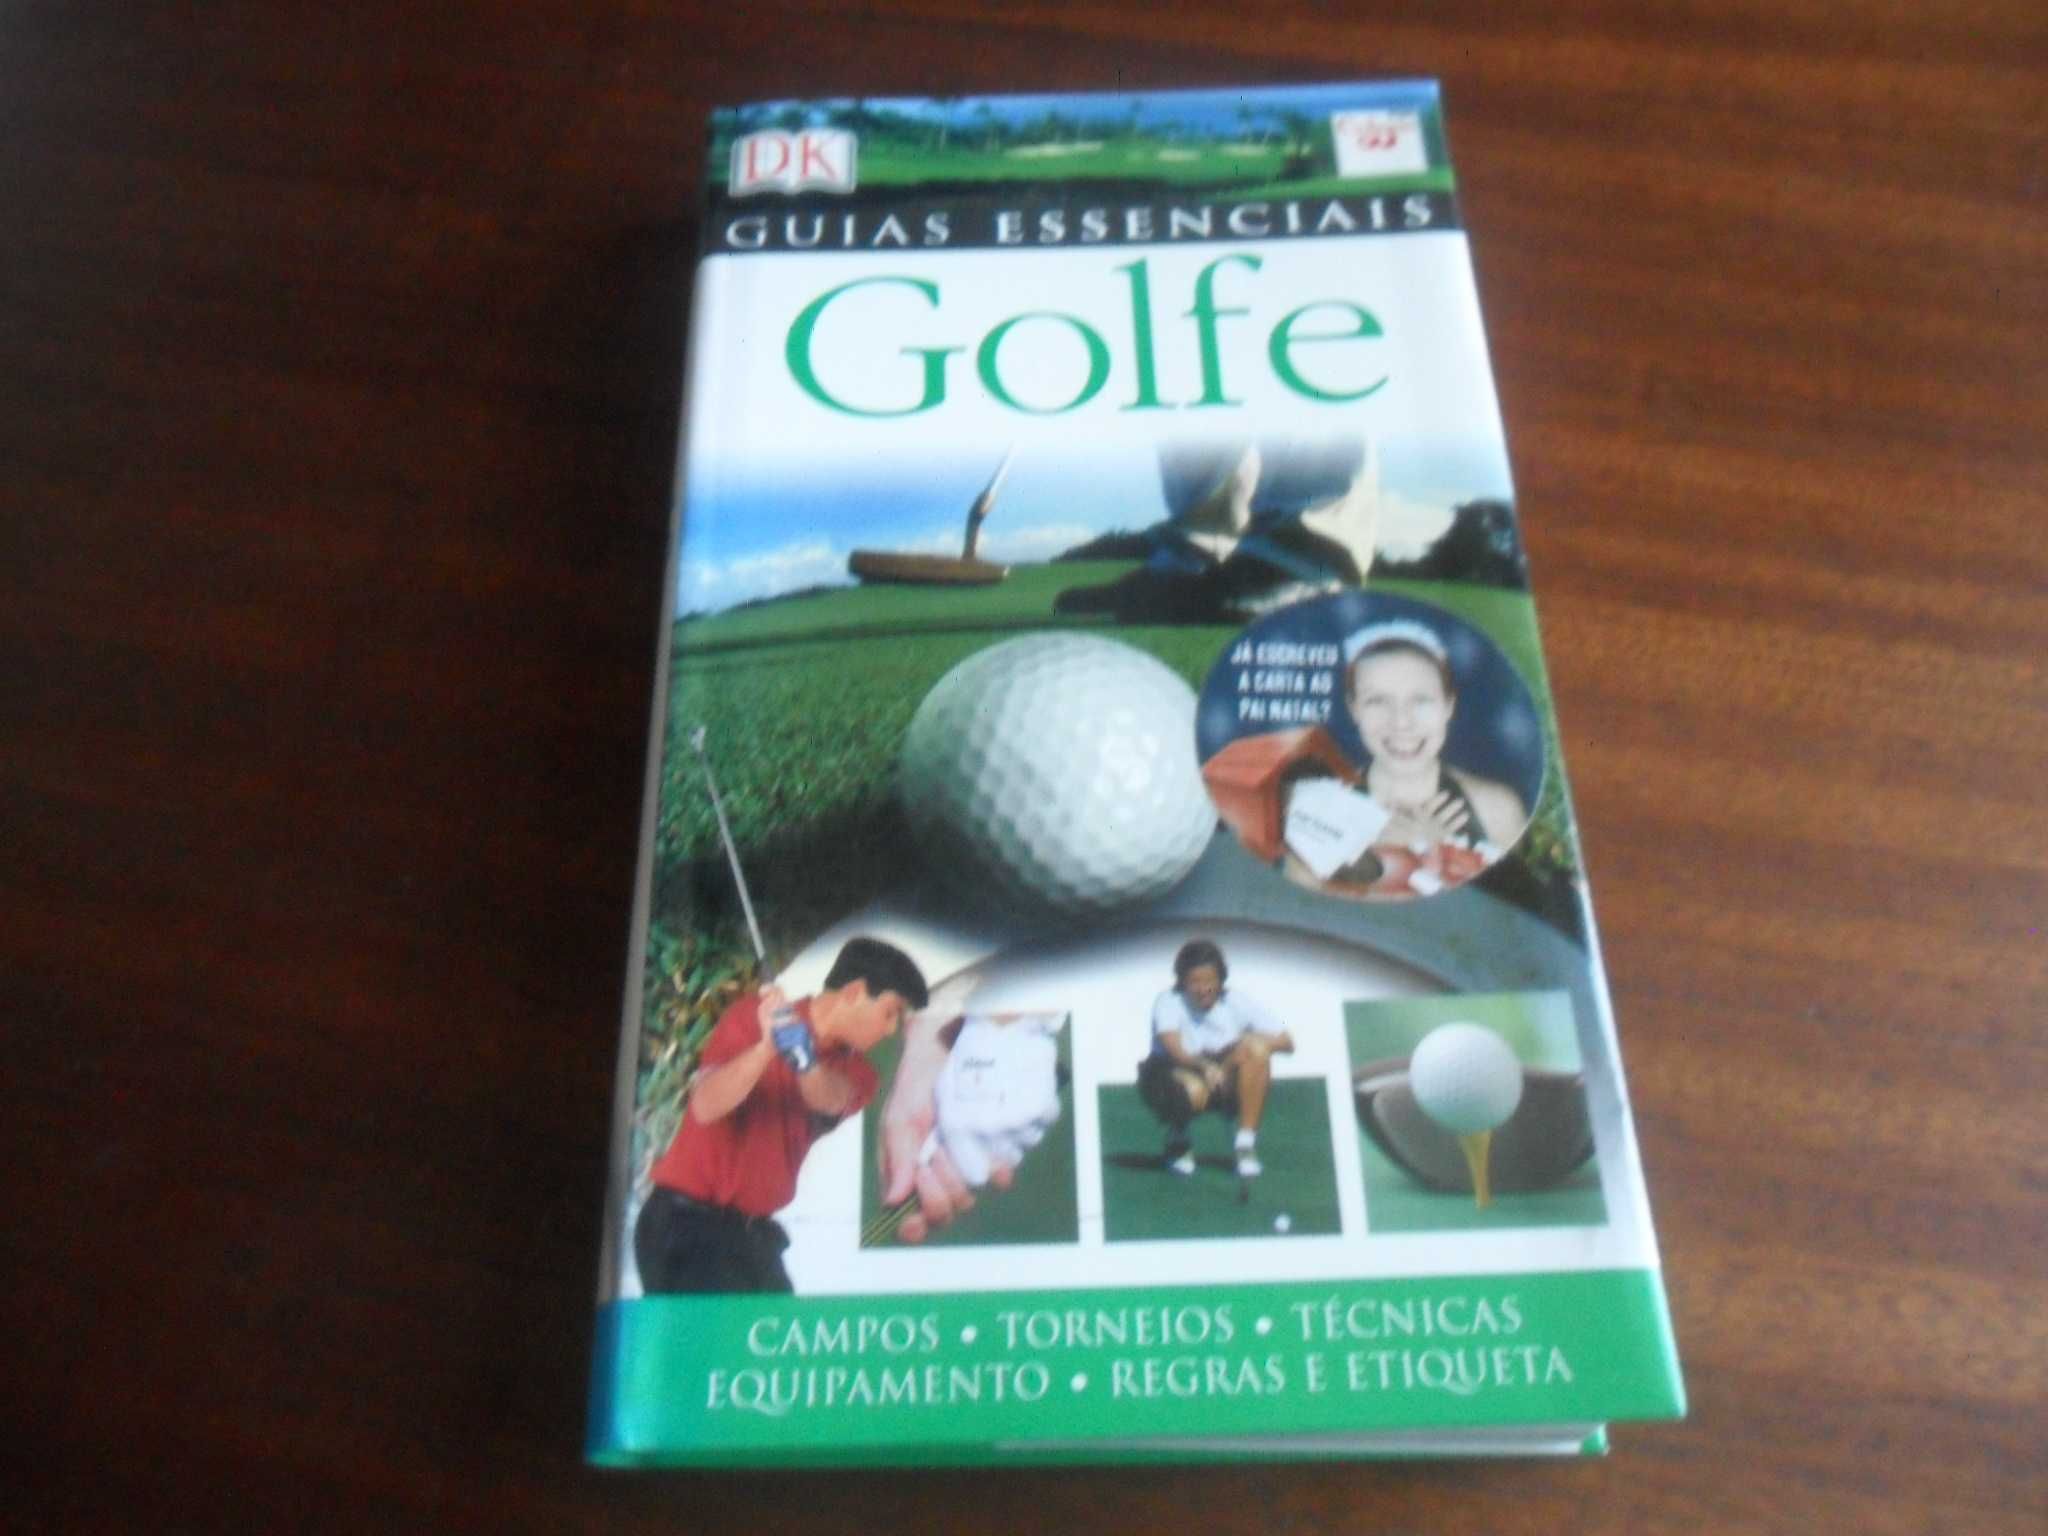 "Golfe" de Arnold Palmer - 1ª Edição de 2006